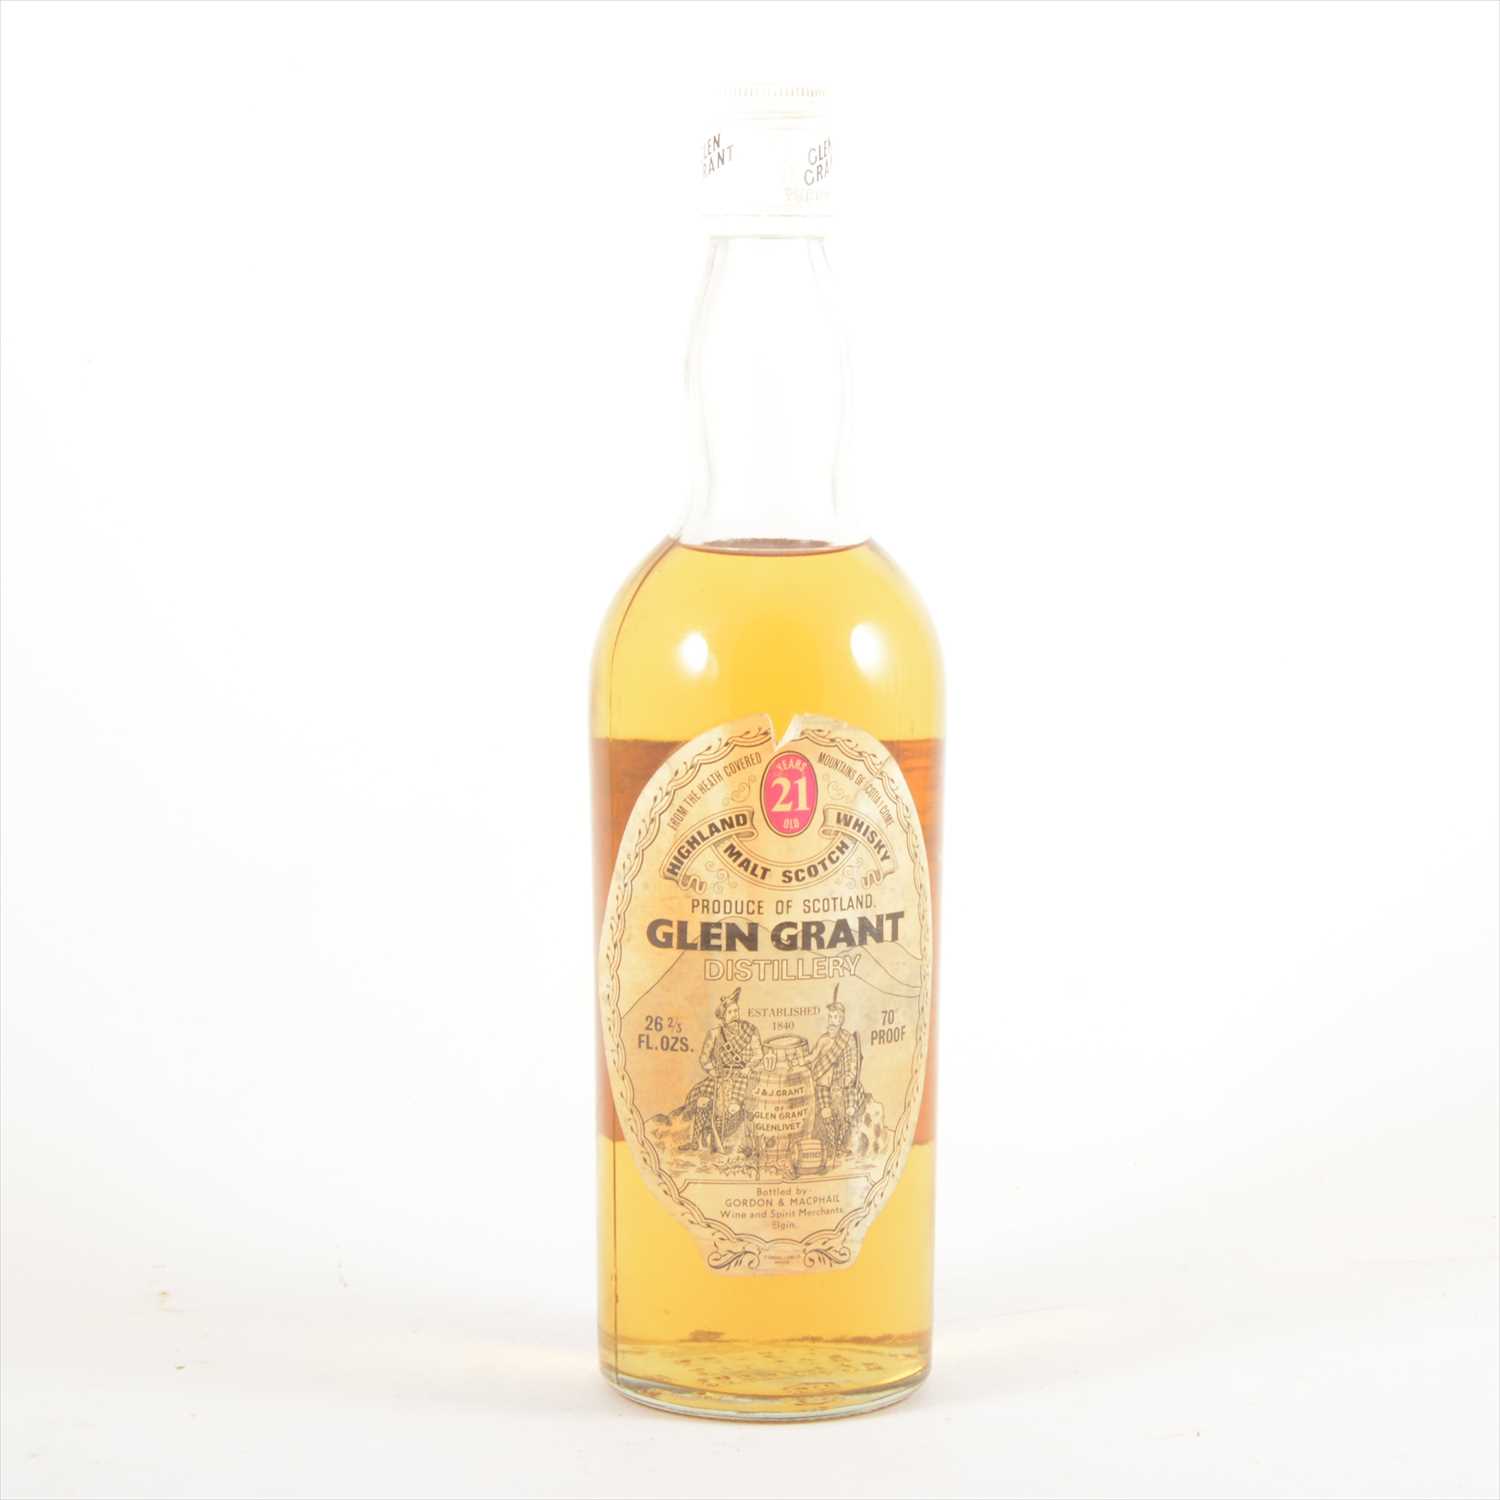 Lot 581 - GLEN GRANT - 21 years old - 1970s bottling